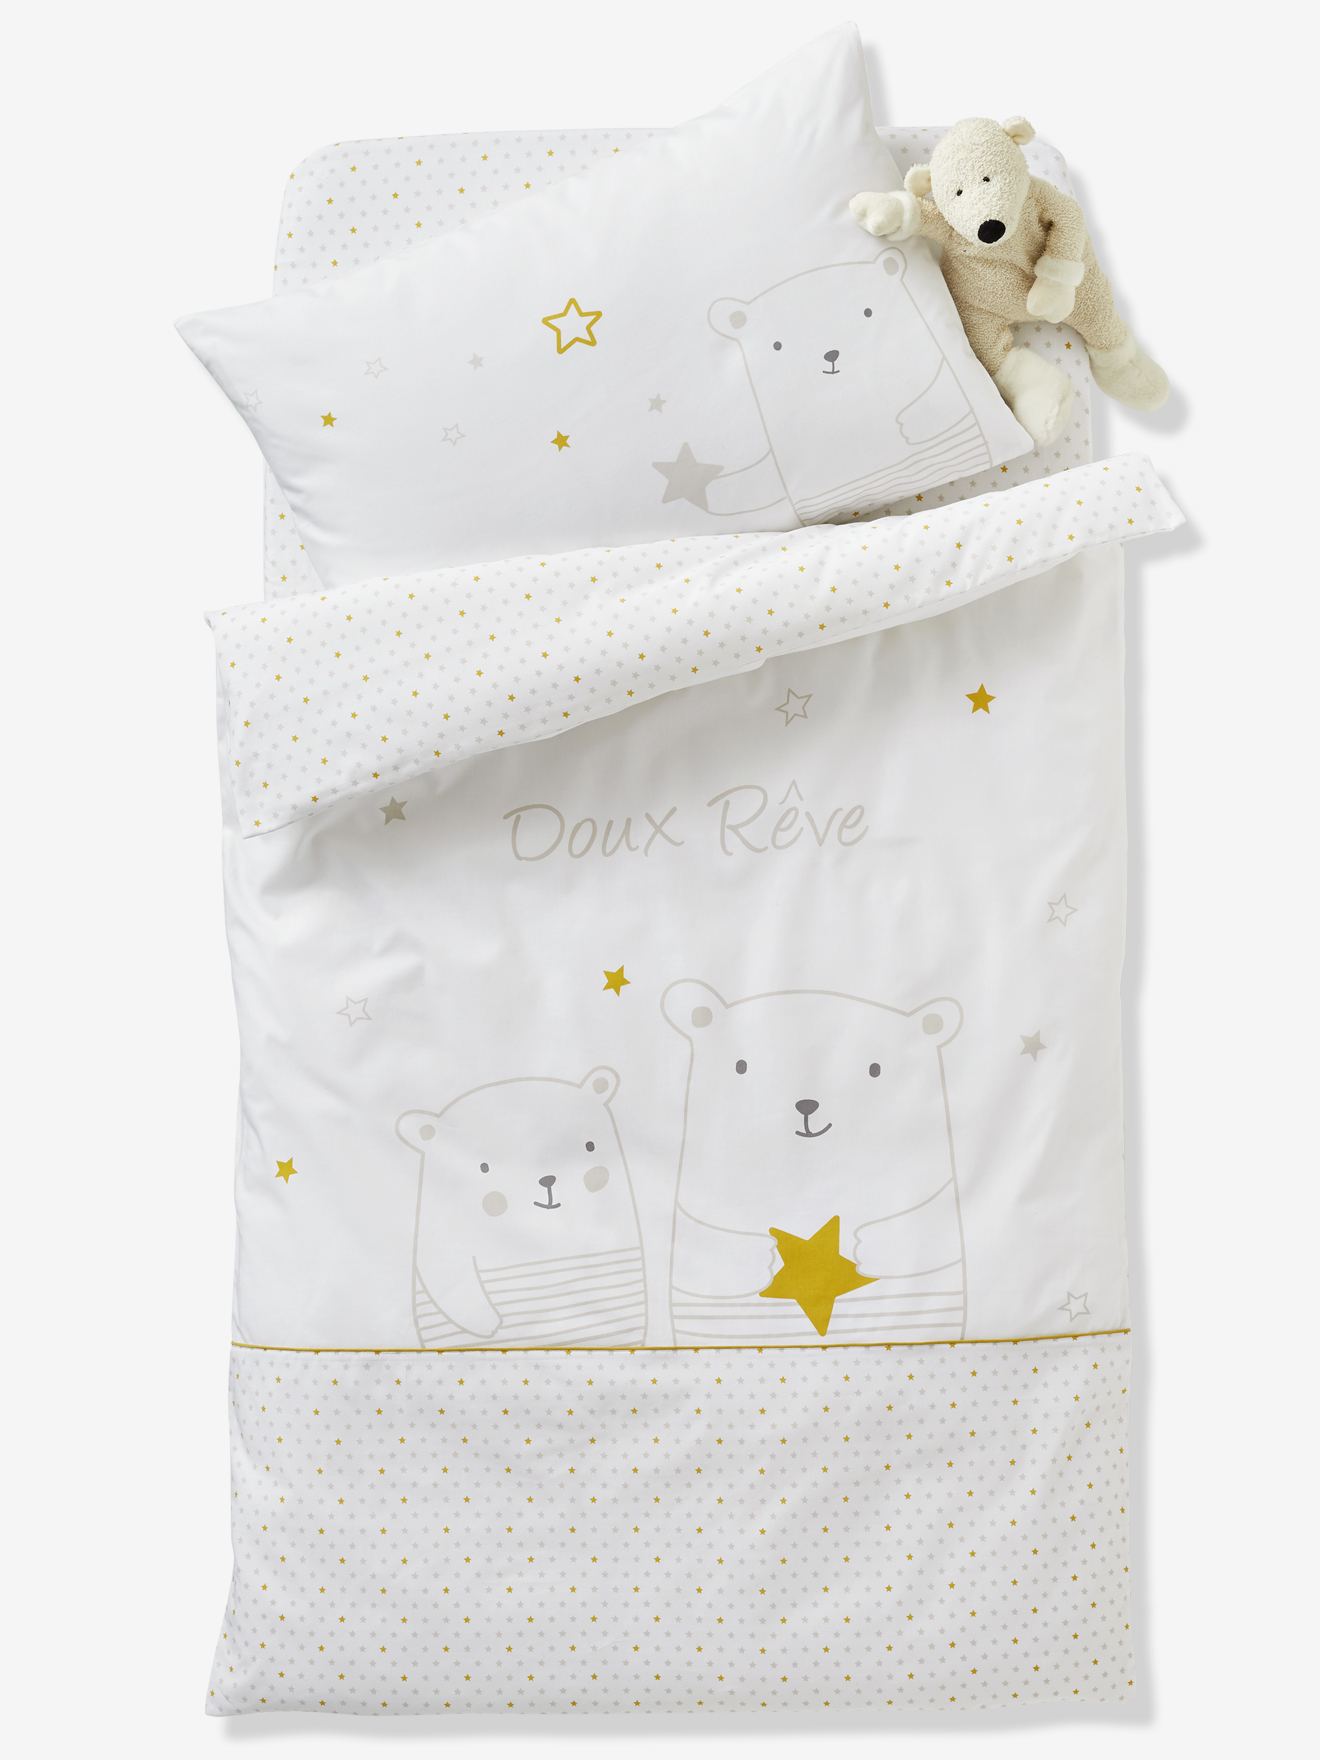 Duvet Cover For Babies Dreamin Of Stars Theme White Light Solid